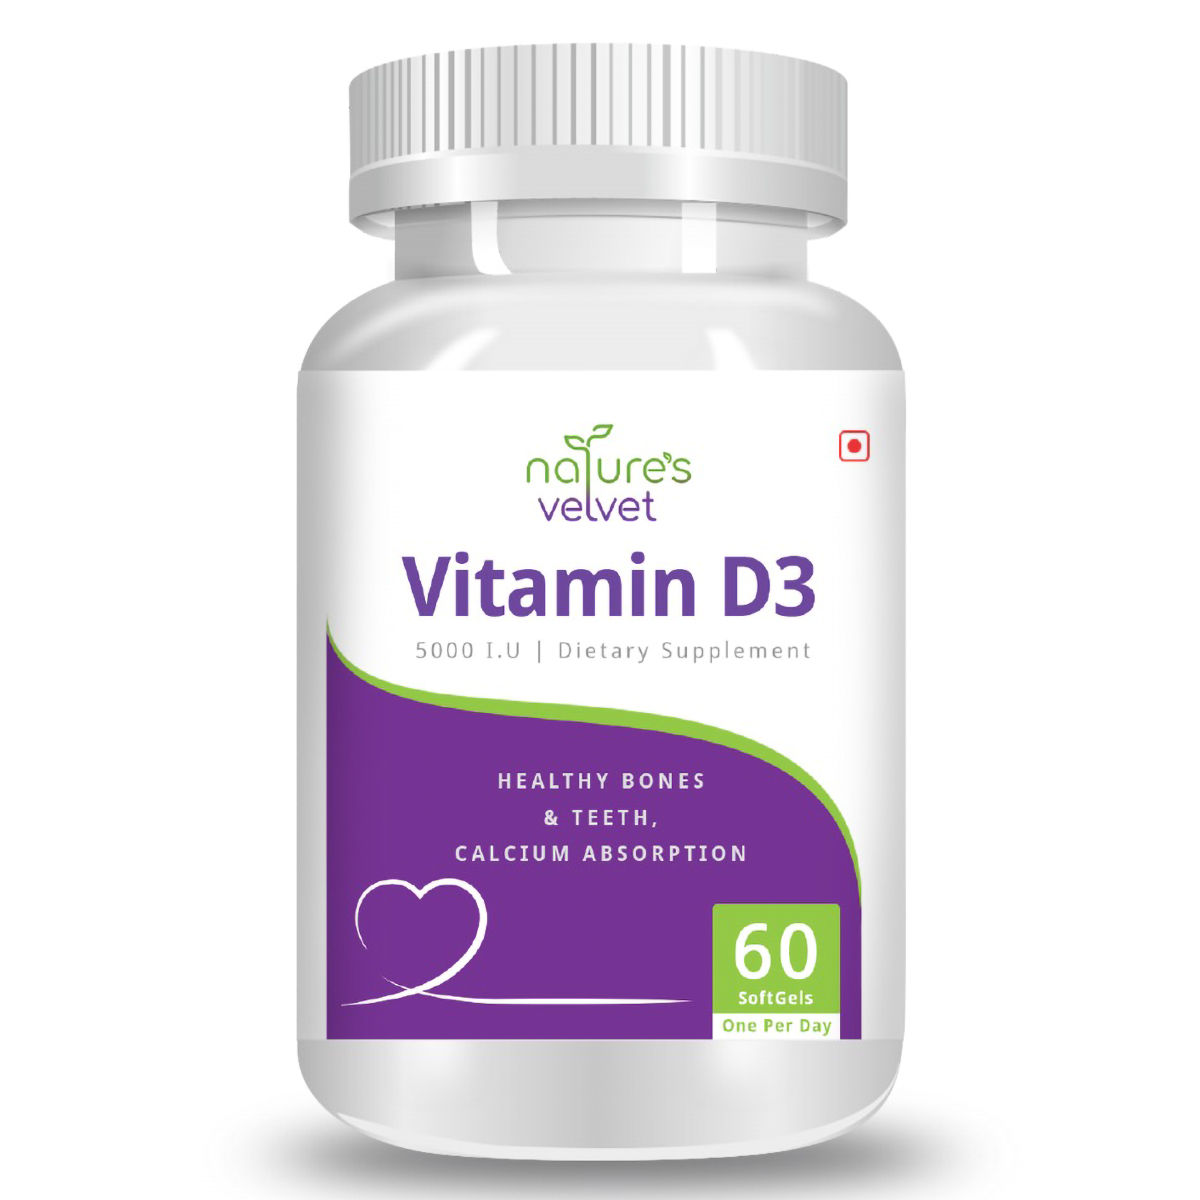 Nature's Velvet Vitamin D3 5000 IU, 60 Softgels, Pack of 1 